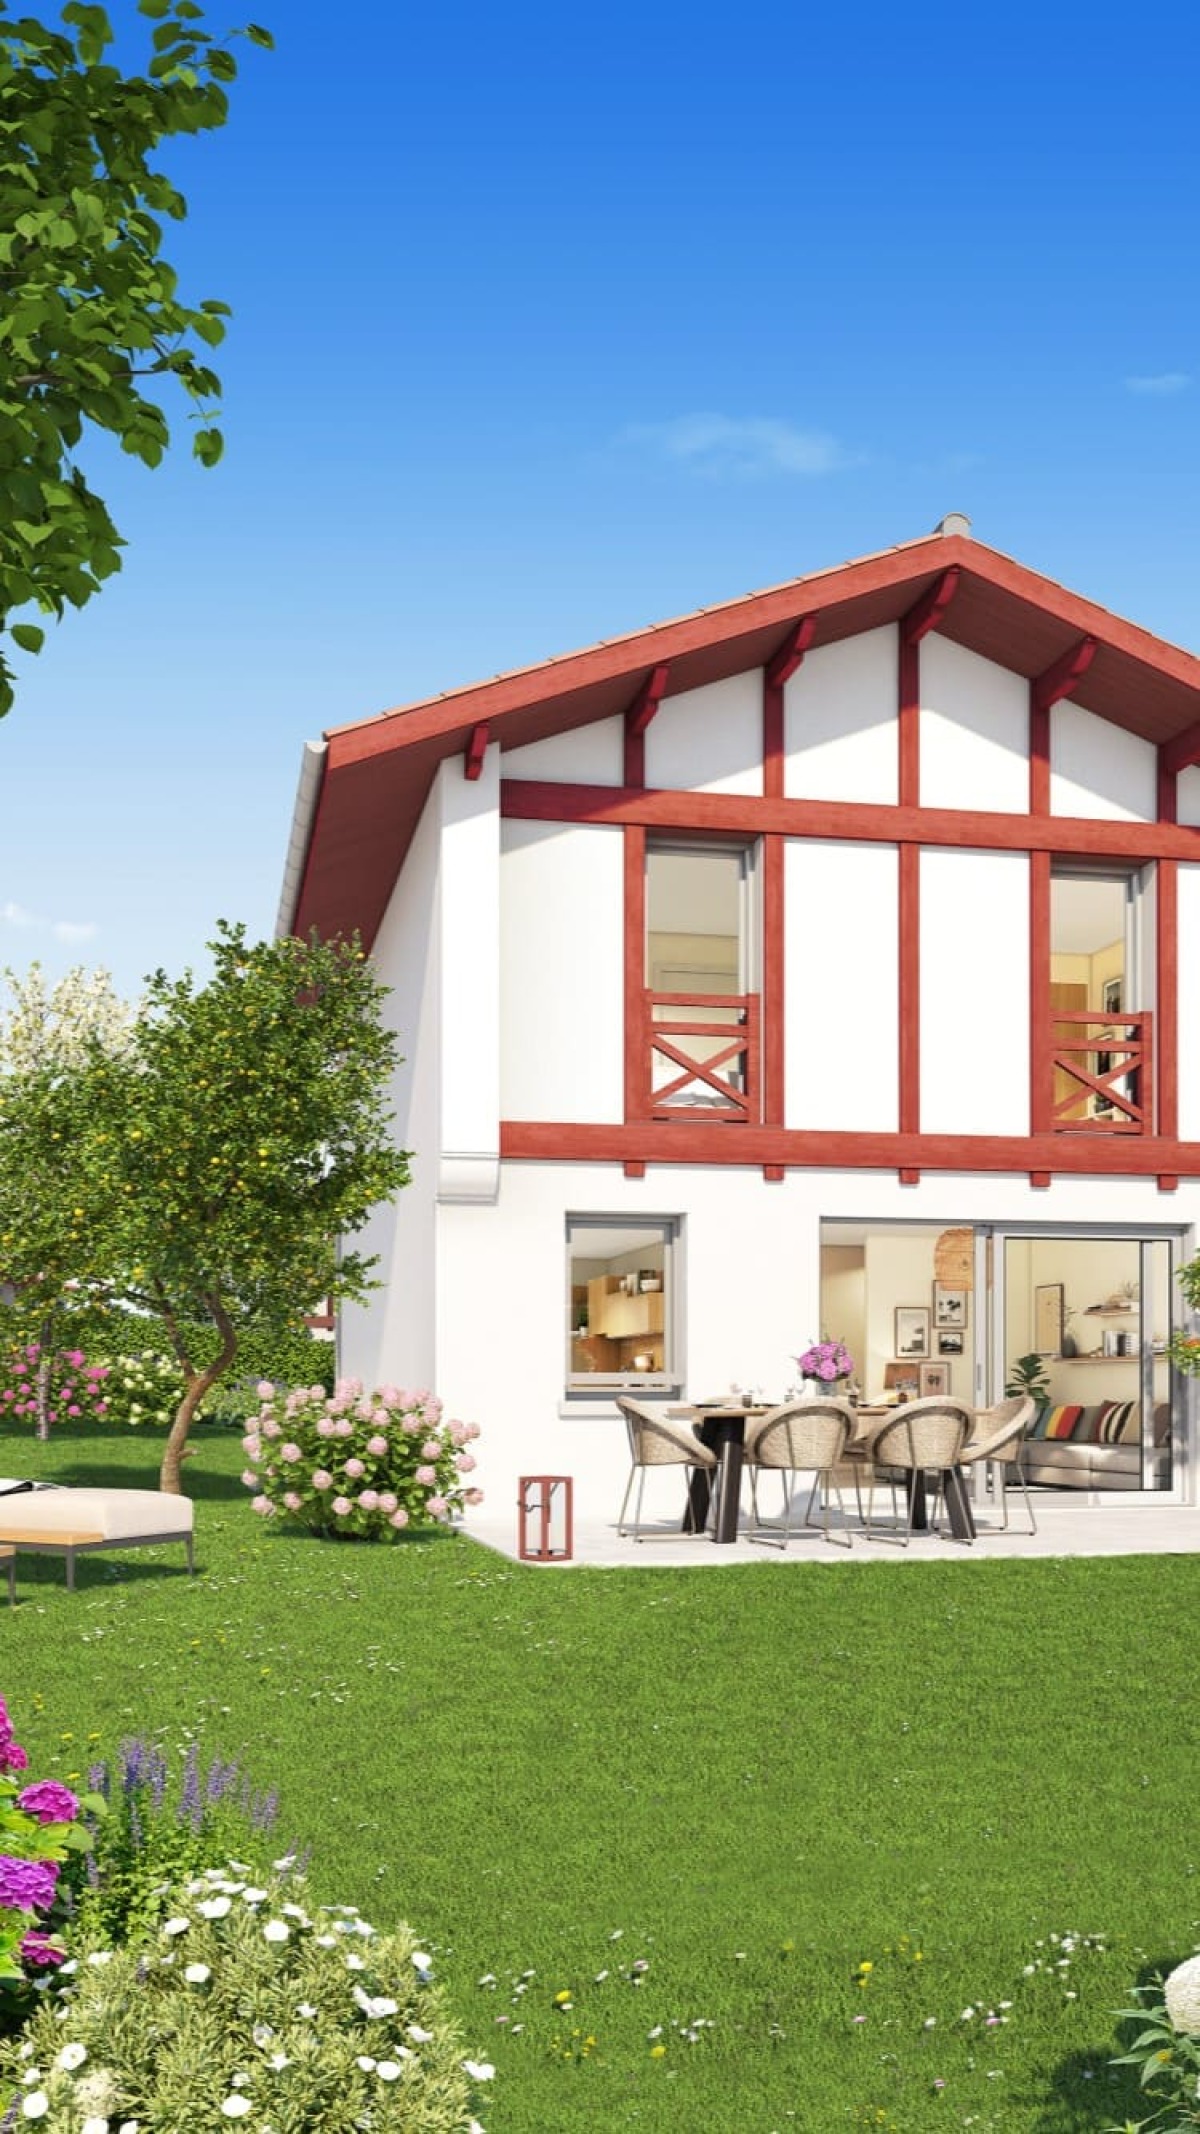 Programme neuf Karginko Borda : Maisons neuves et appartements neufs à Saint-Jean-de-Luz référence 6477, aperçu n°0